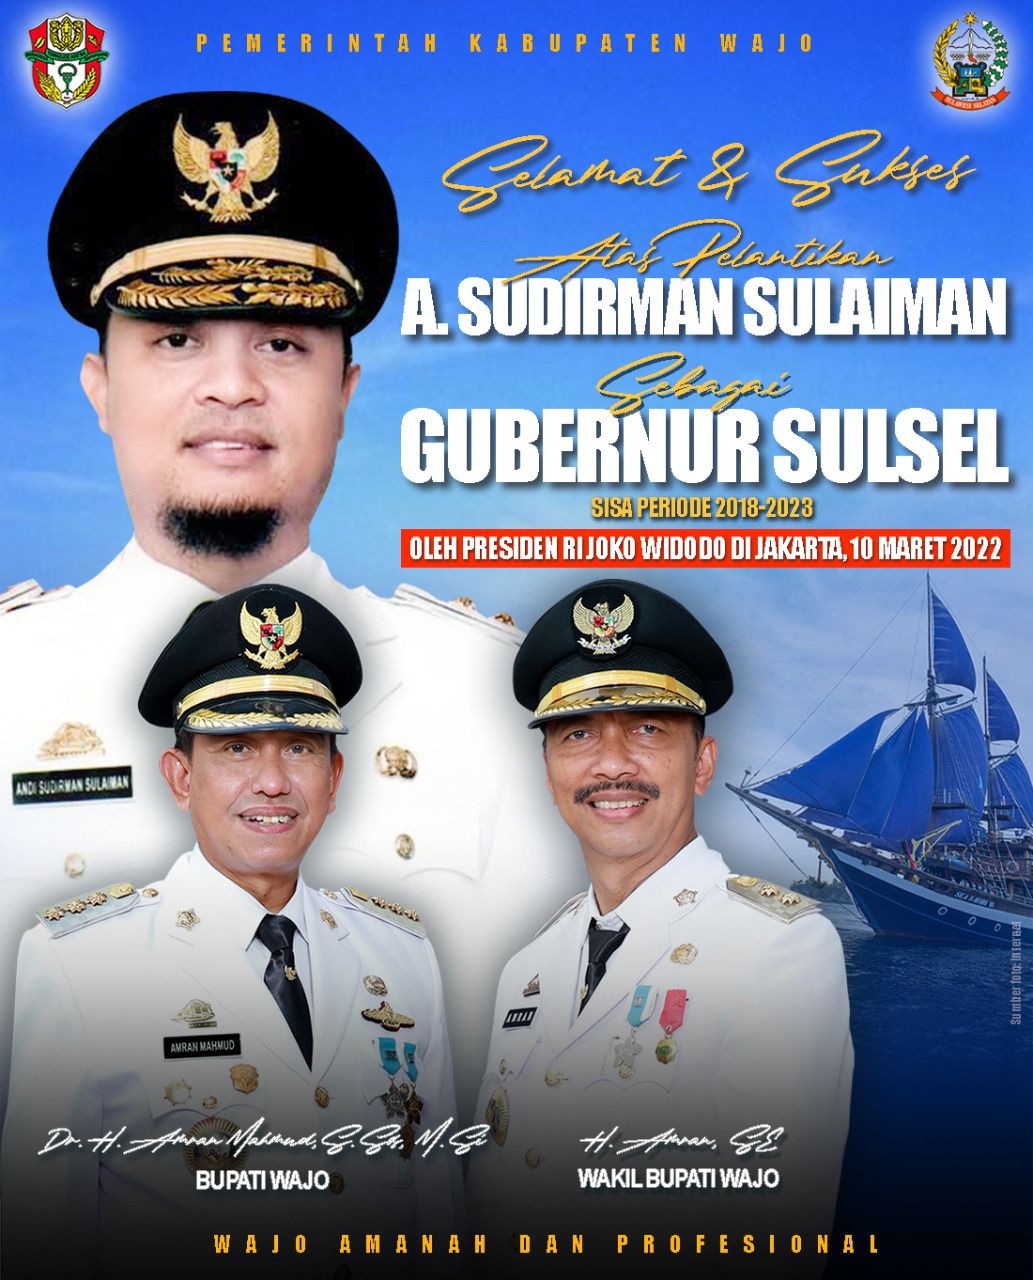 Resmi Jadi Gubernur Sulsel, Amran Mahmud Ucapkan Selamat kepada Andi Sudirman Sulaiman